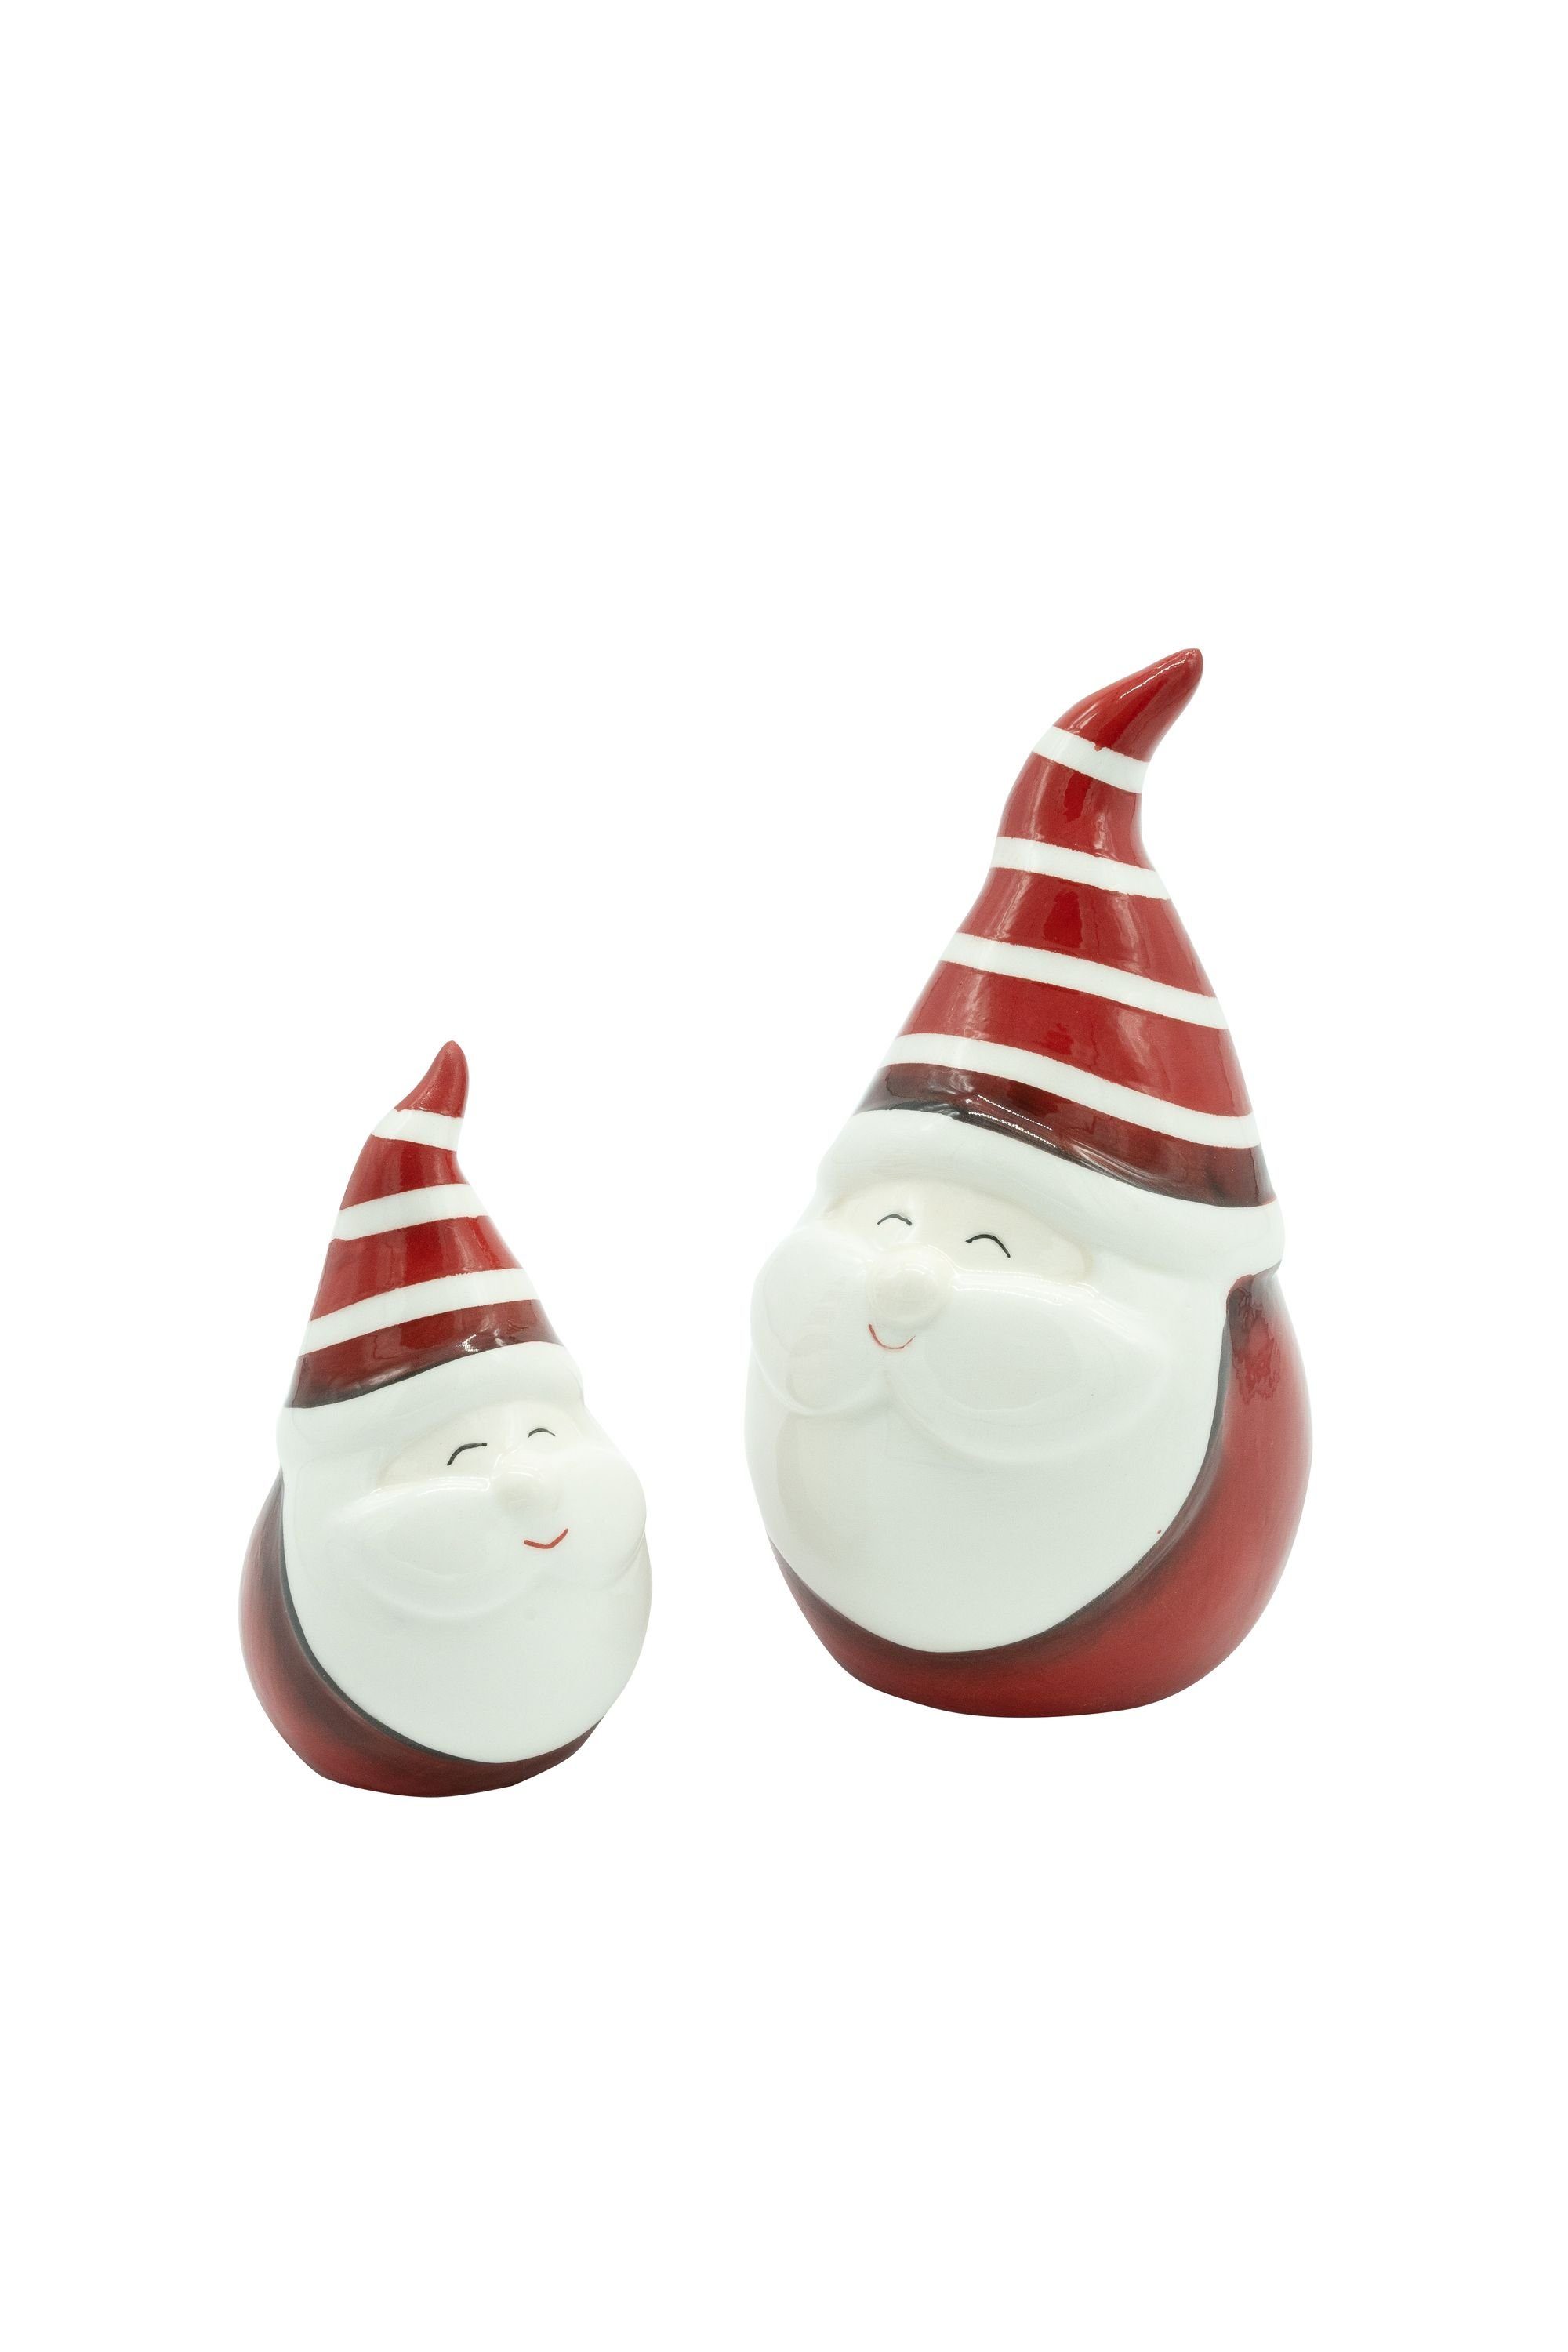 Heitmann DECO Weihnachtsfigur Nikolaus, aus Keramik, rot/weiß